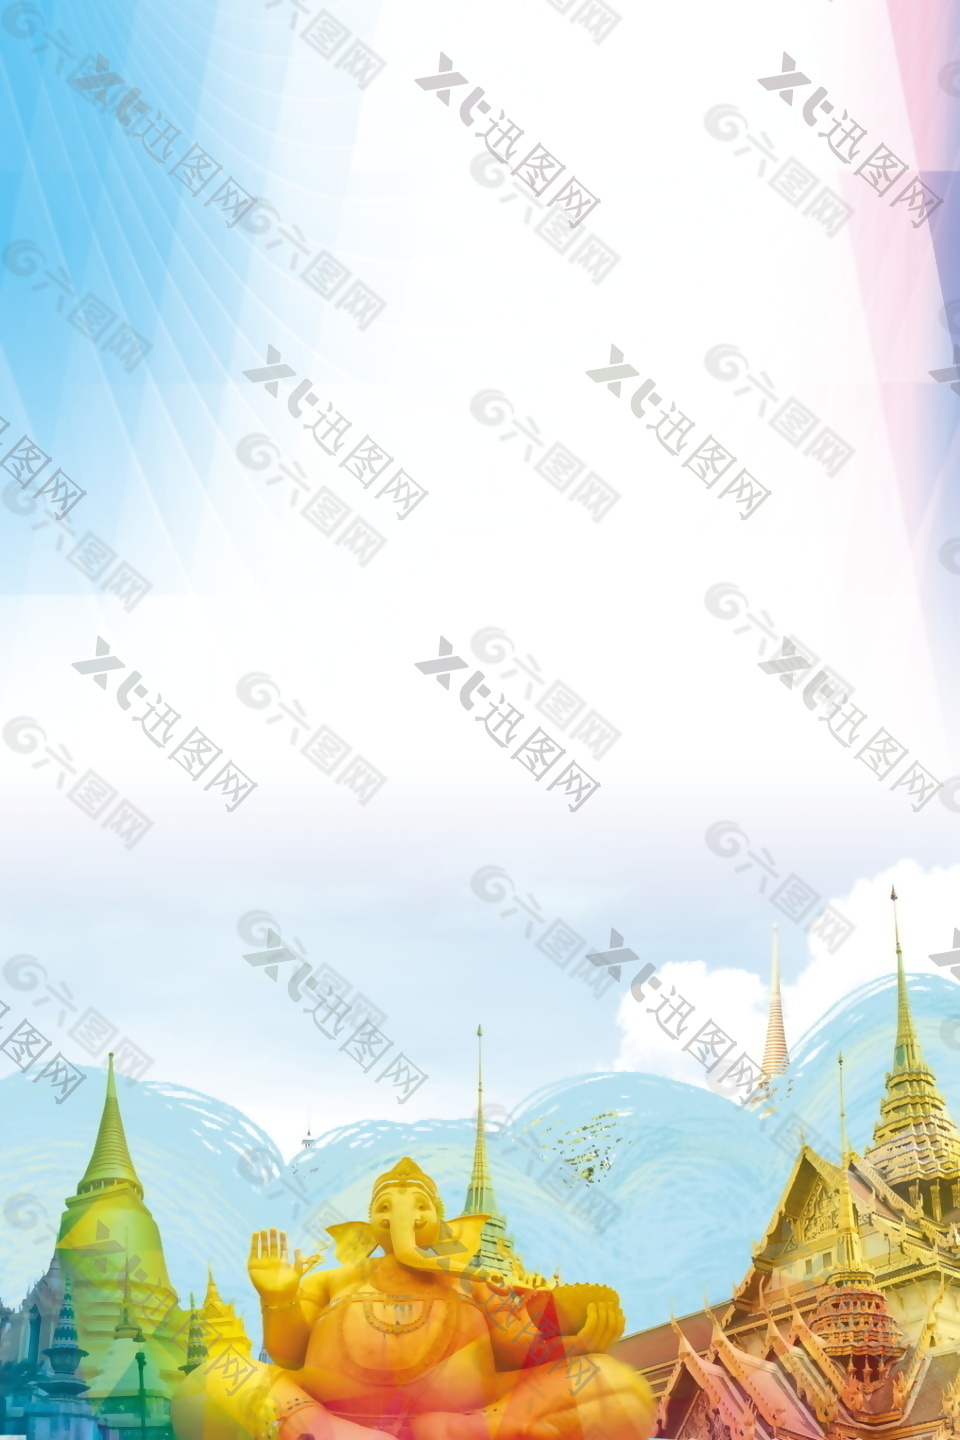 泰国皇宫旅游海报背景设计